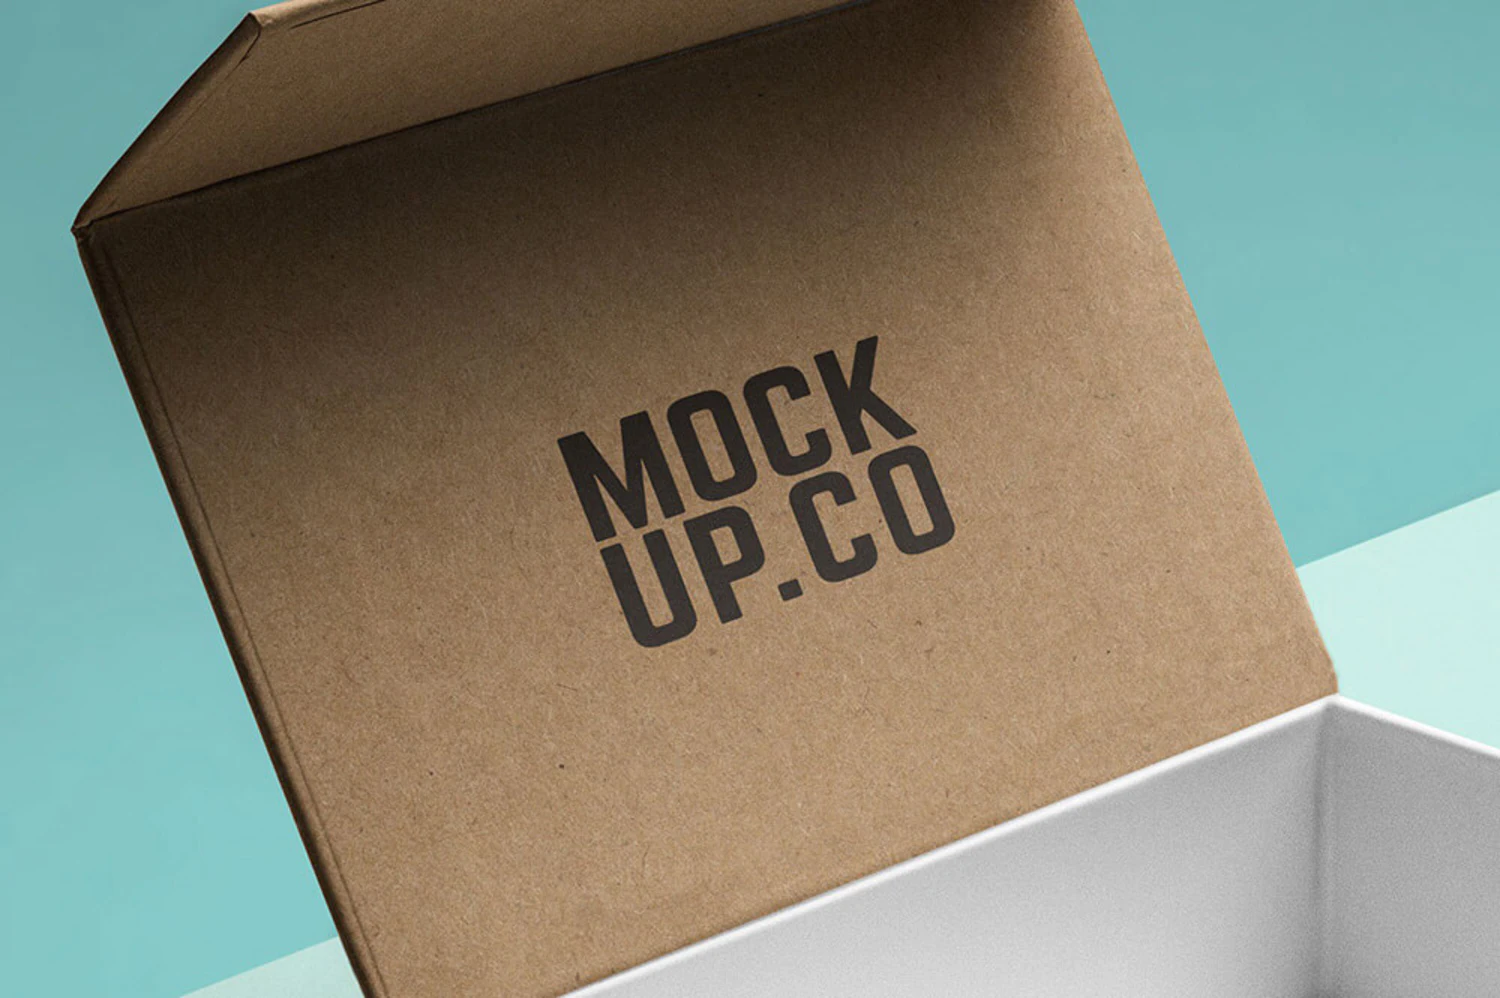 51 逼真的高级礼品木盒包装设计样机 (psd)Premium Box Mockup 5996635